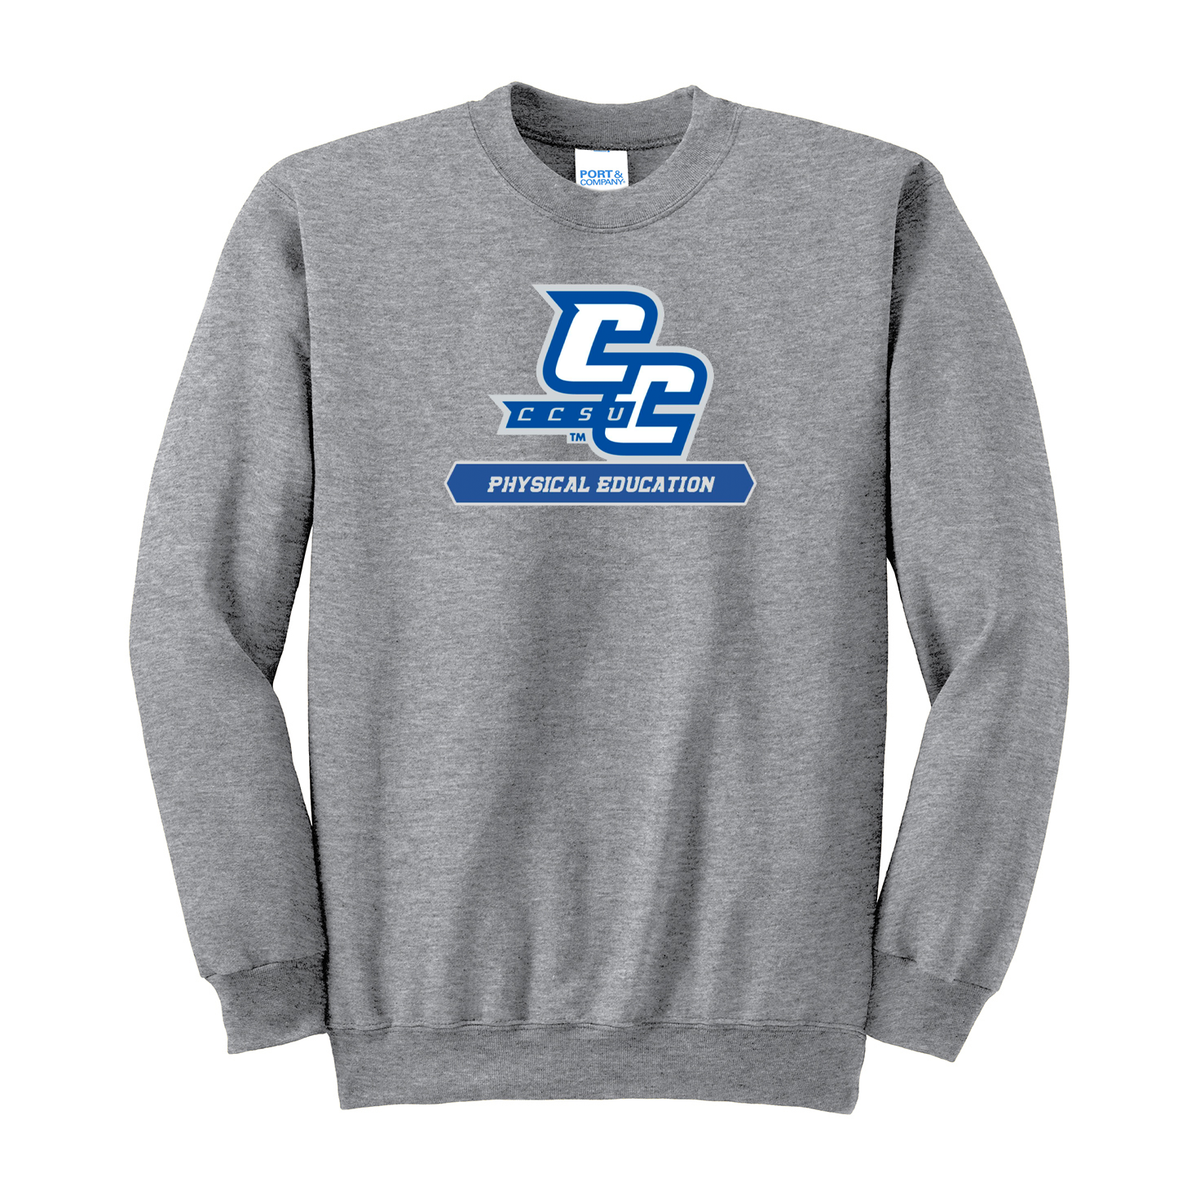 CCSU PE Club Crew Neck Sweater